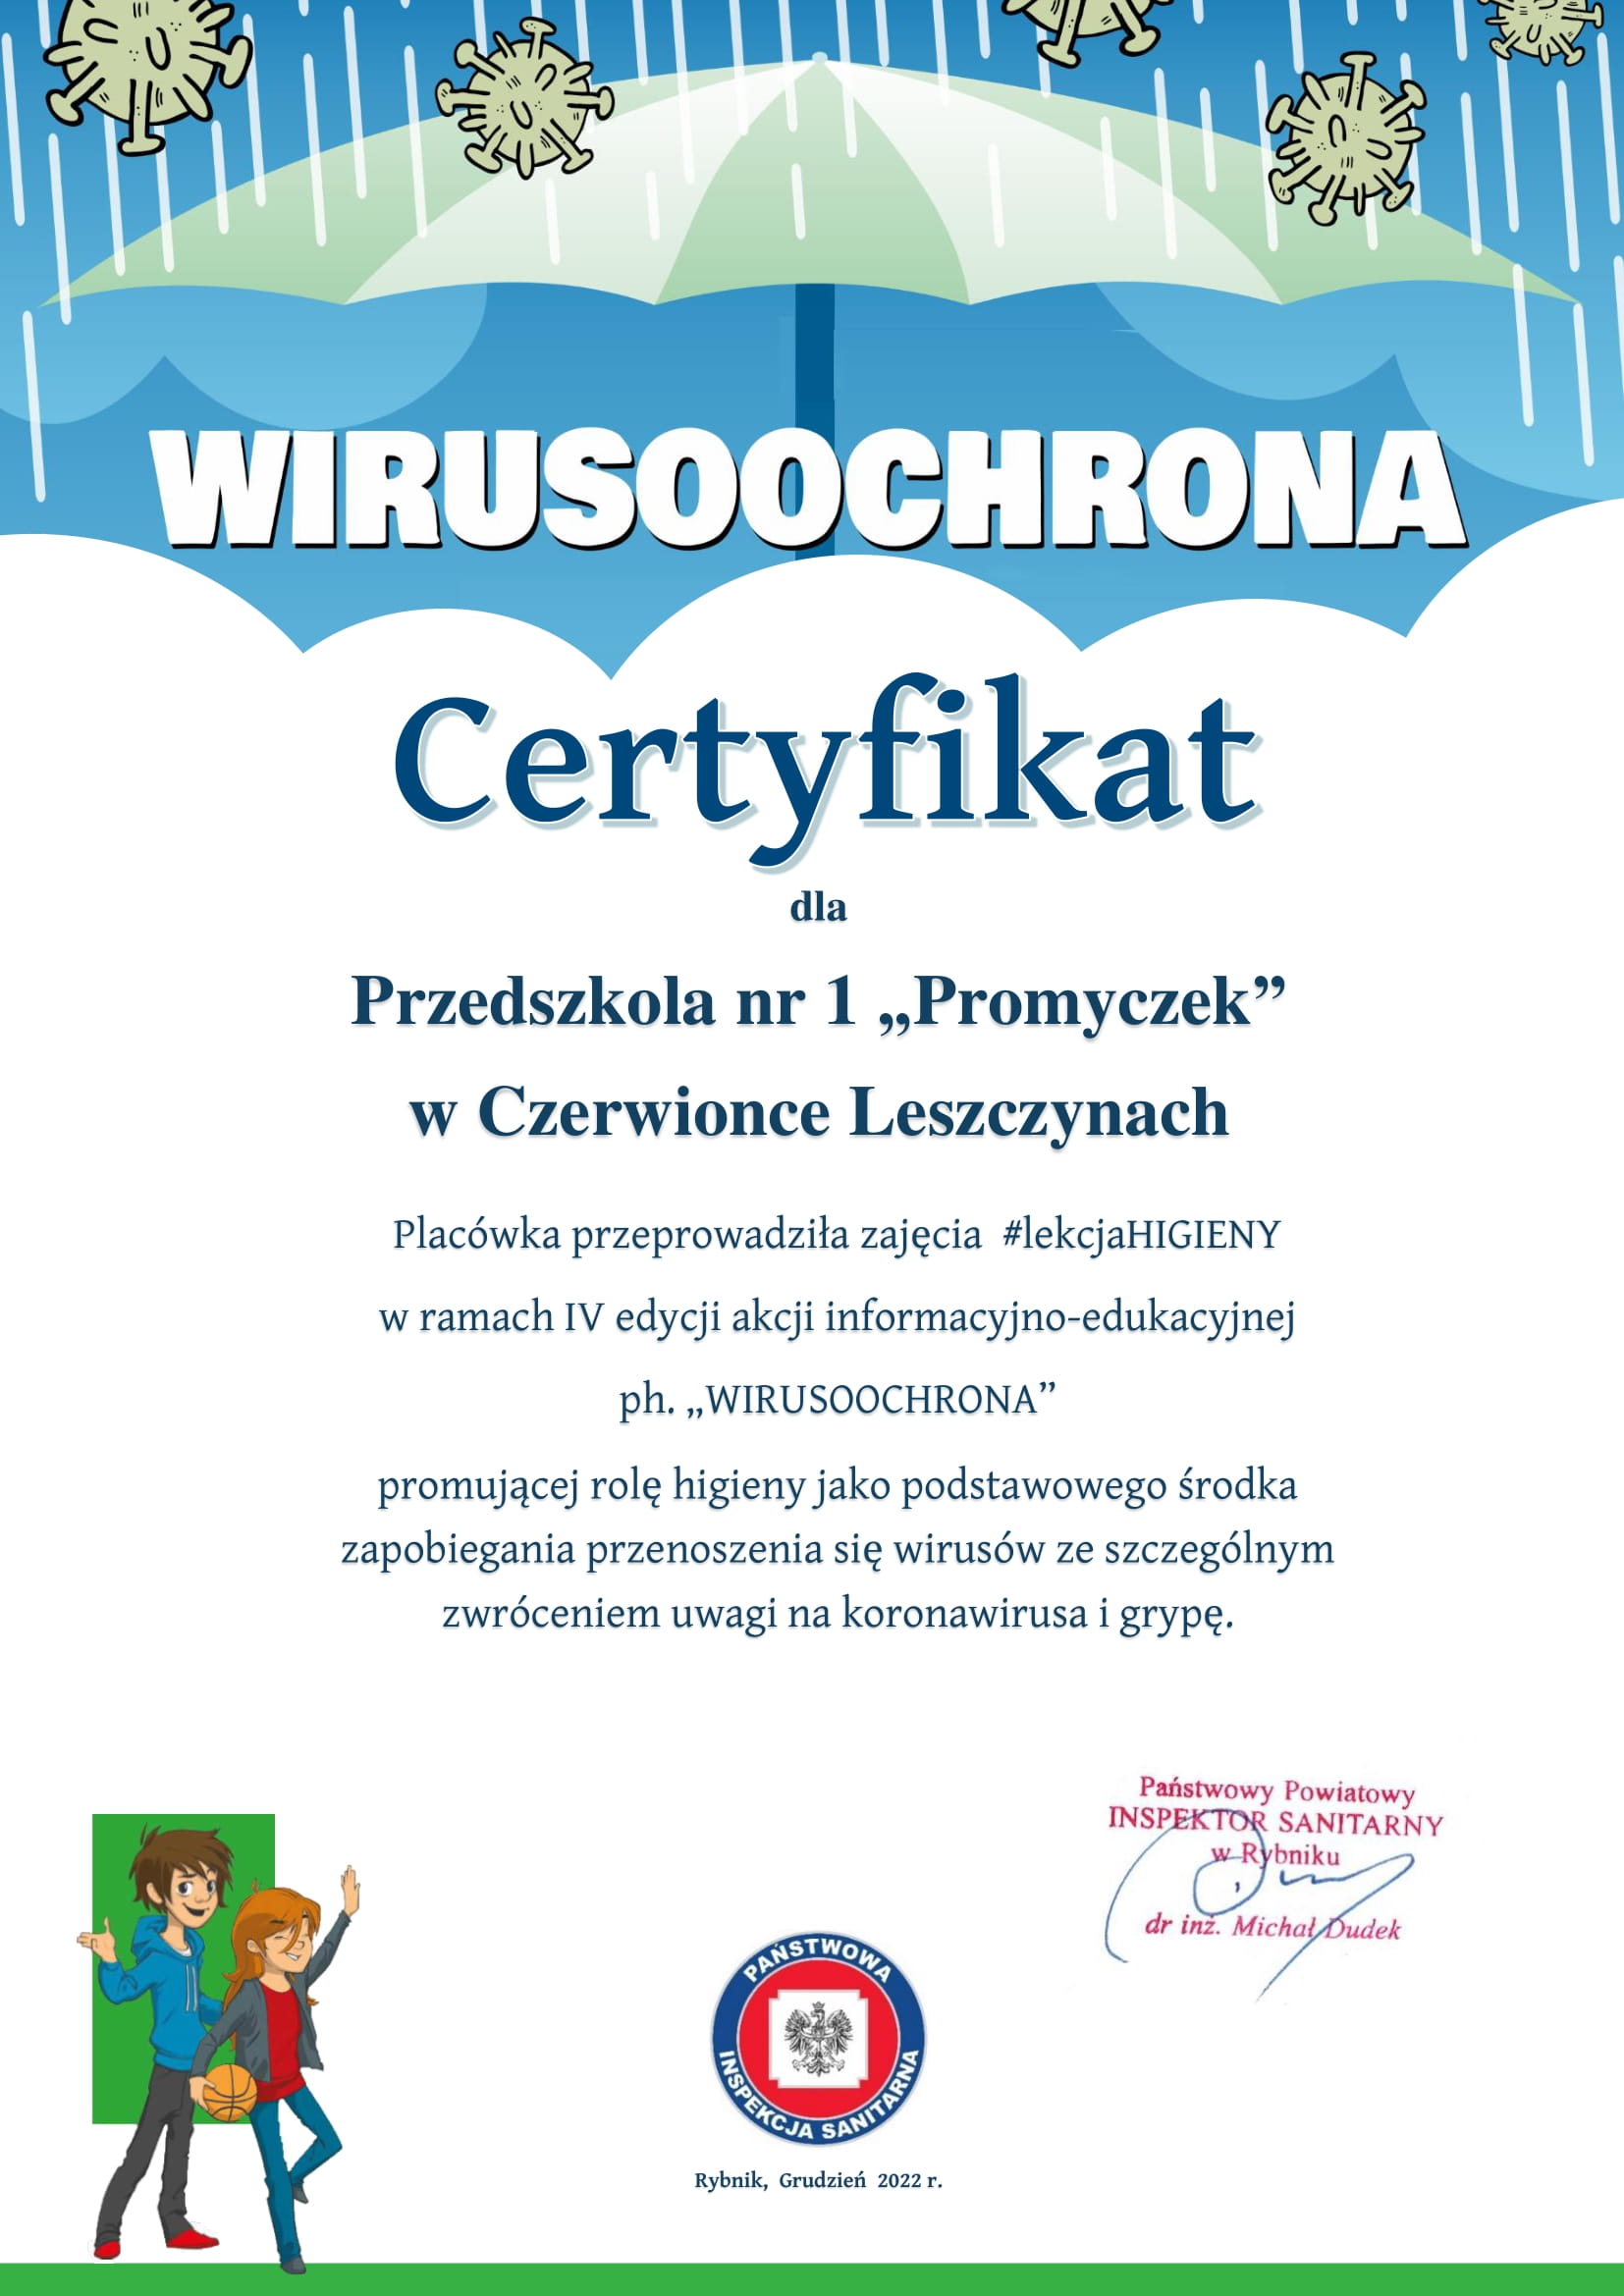 Certyfikat za udział w akcji "Wirusoochrona".